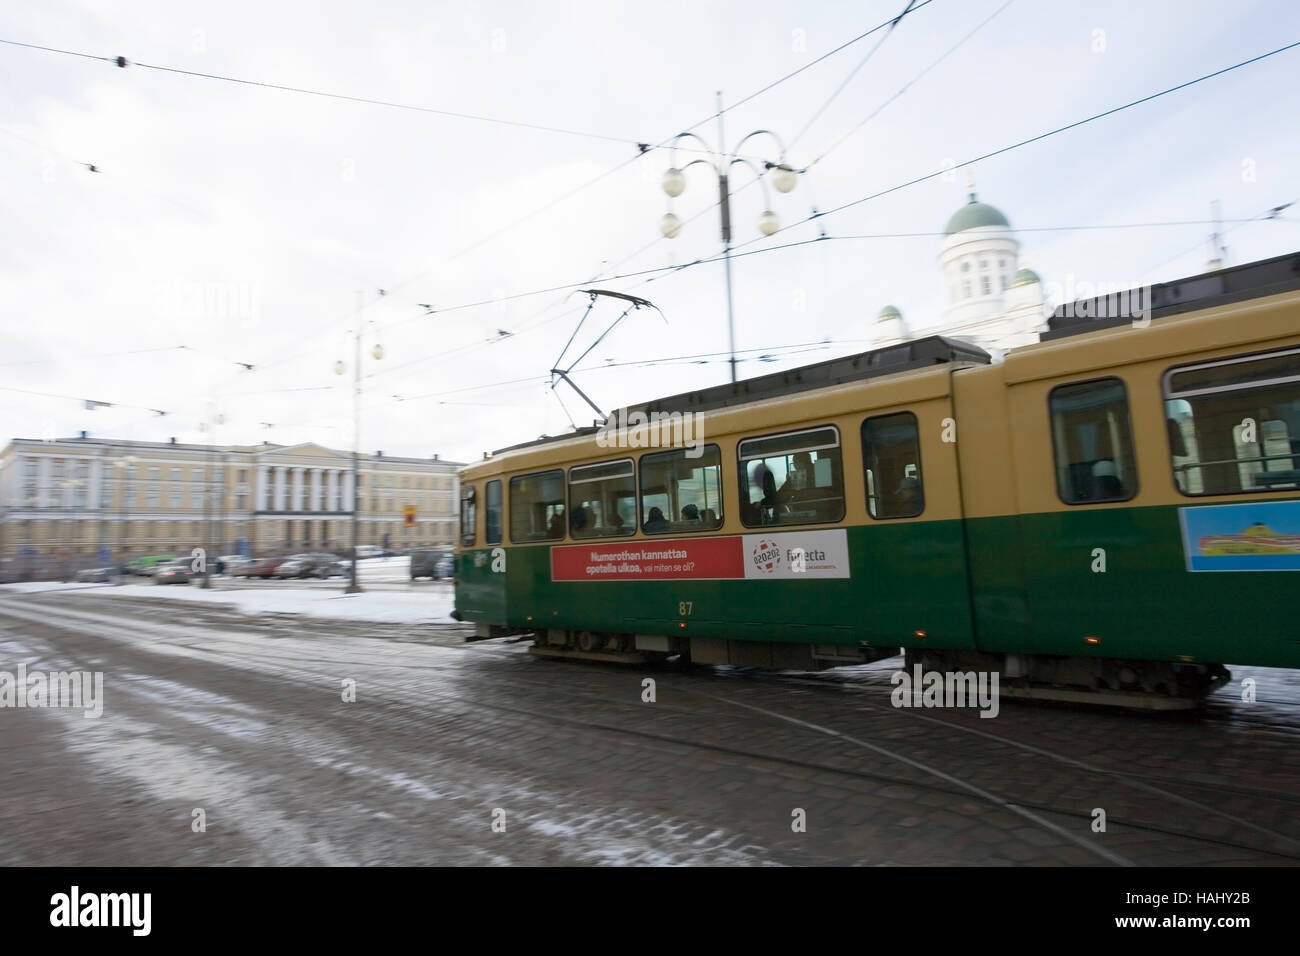 Vieux tram à Helsinki en Finlande Banque D'Images